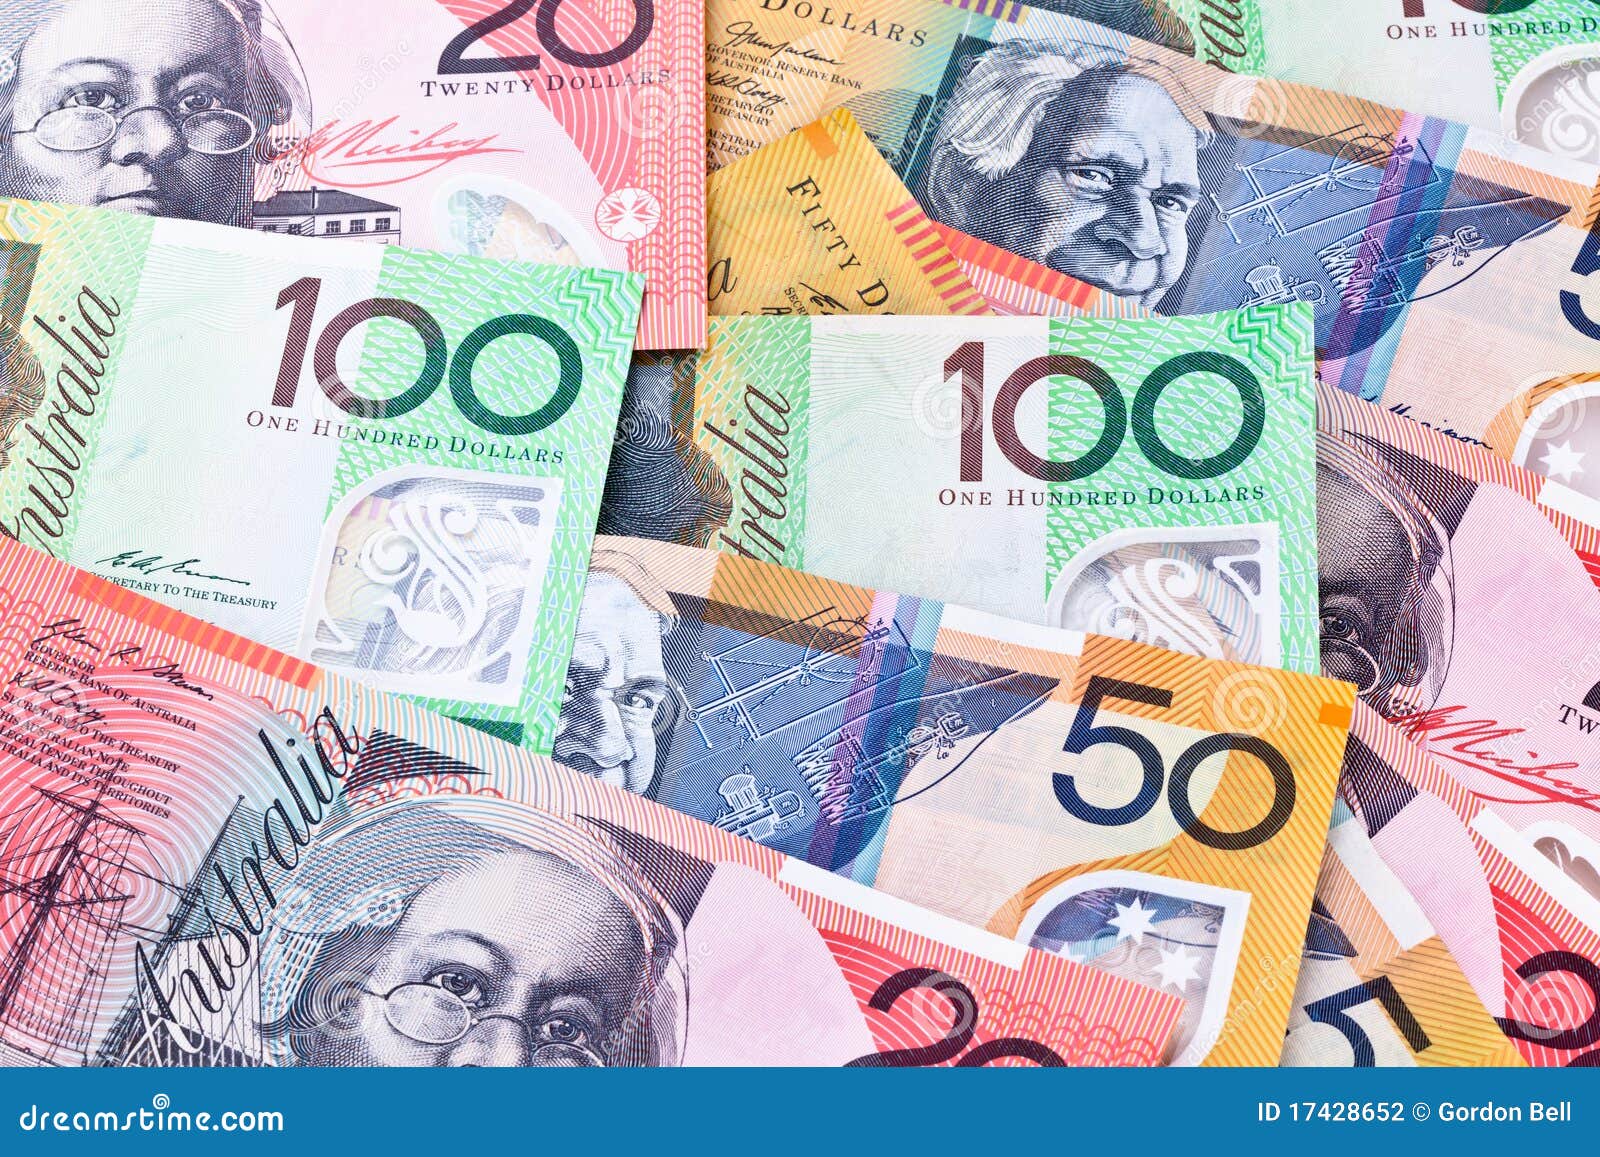 Австралийская валюта. Австралийский доллар. Валюта Австралии. Австралийский доллар фото. Австралийский доллар рисунок.